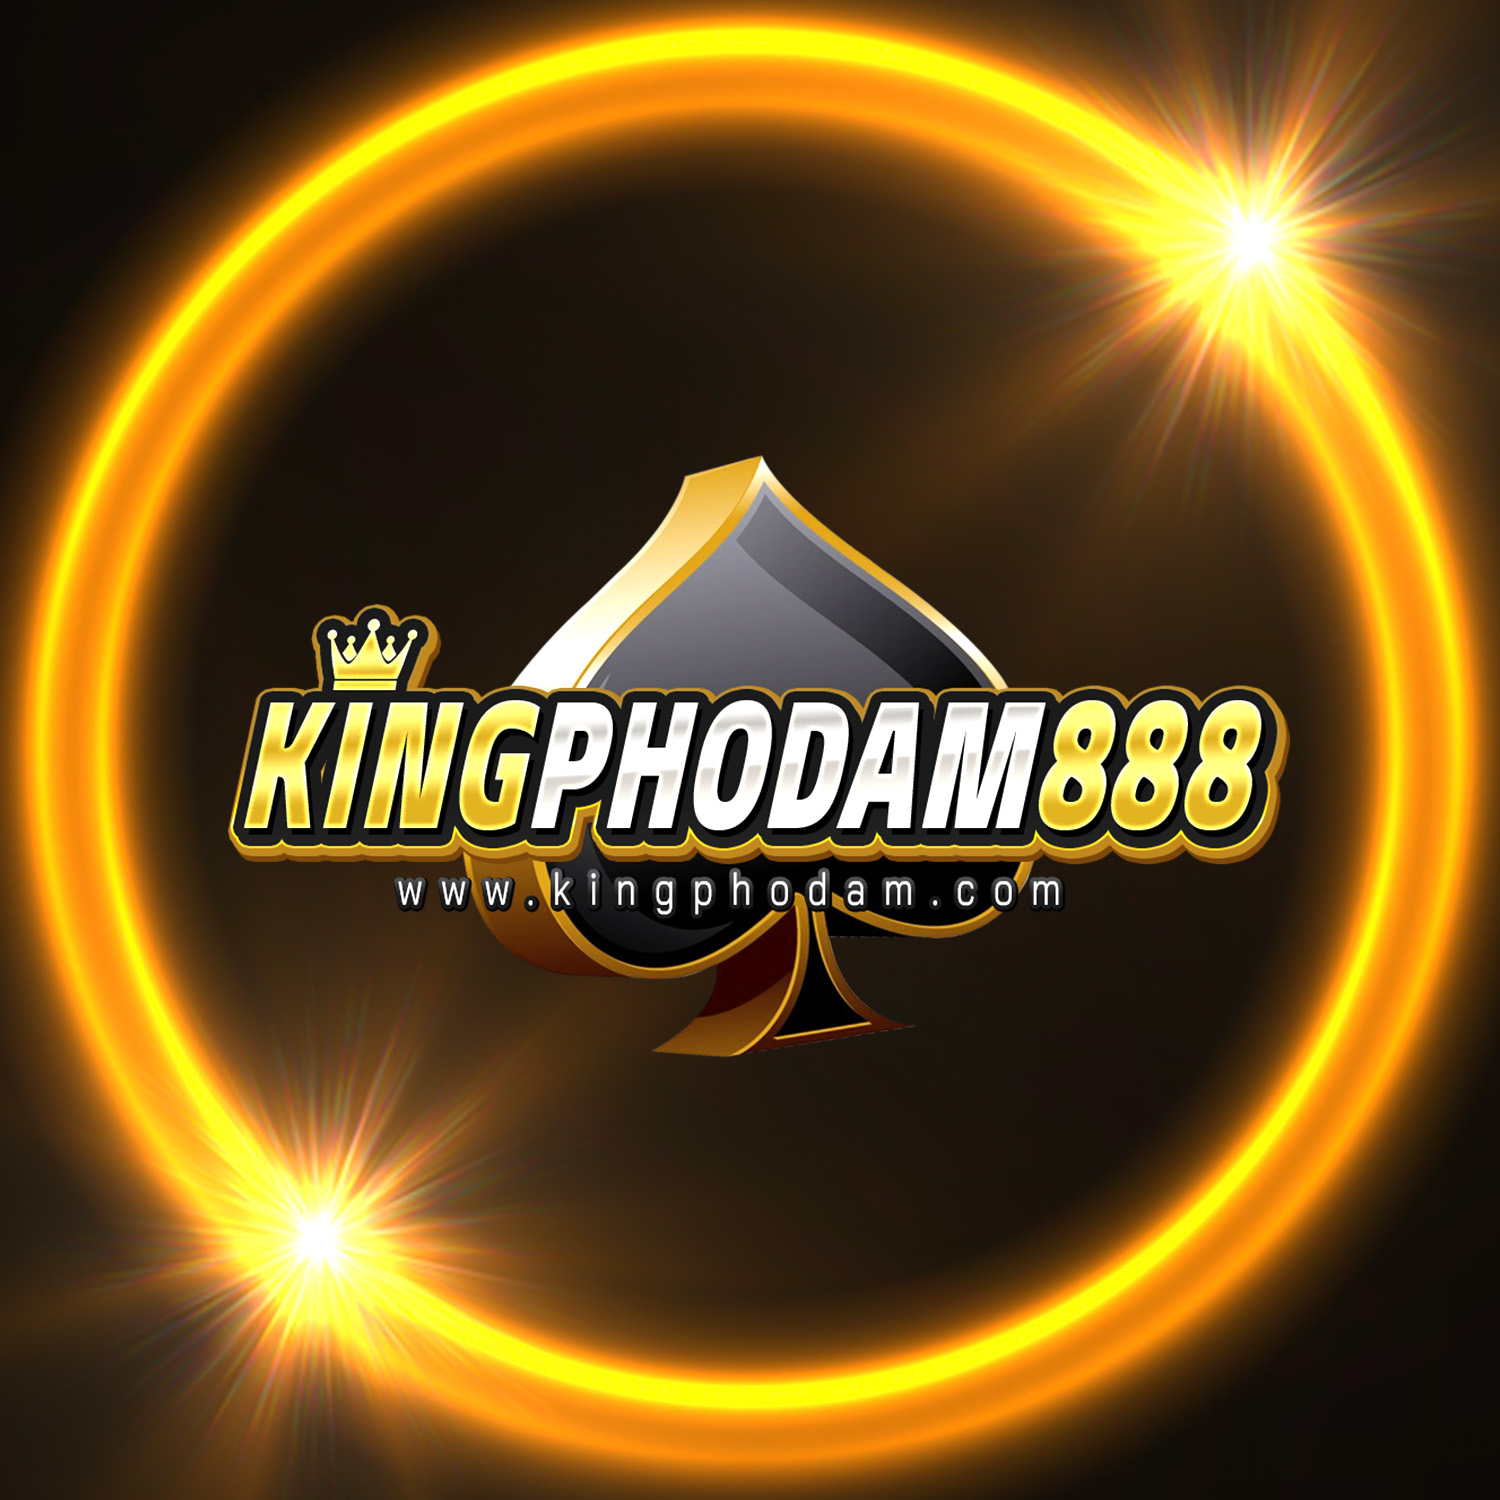 logo kingphodam888